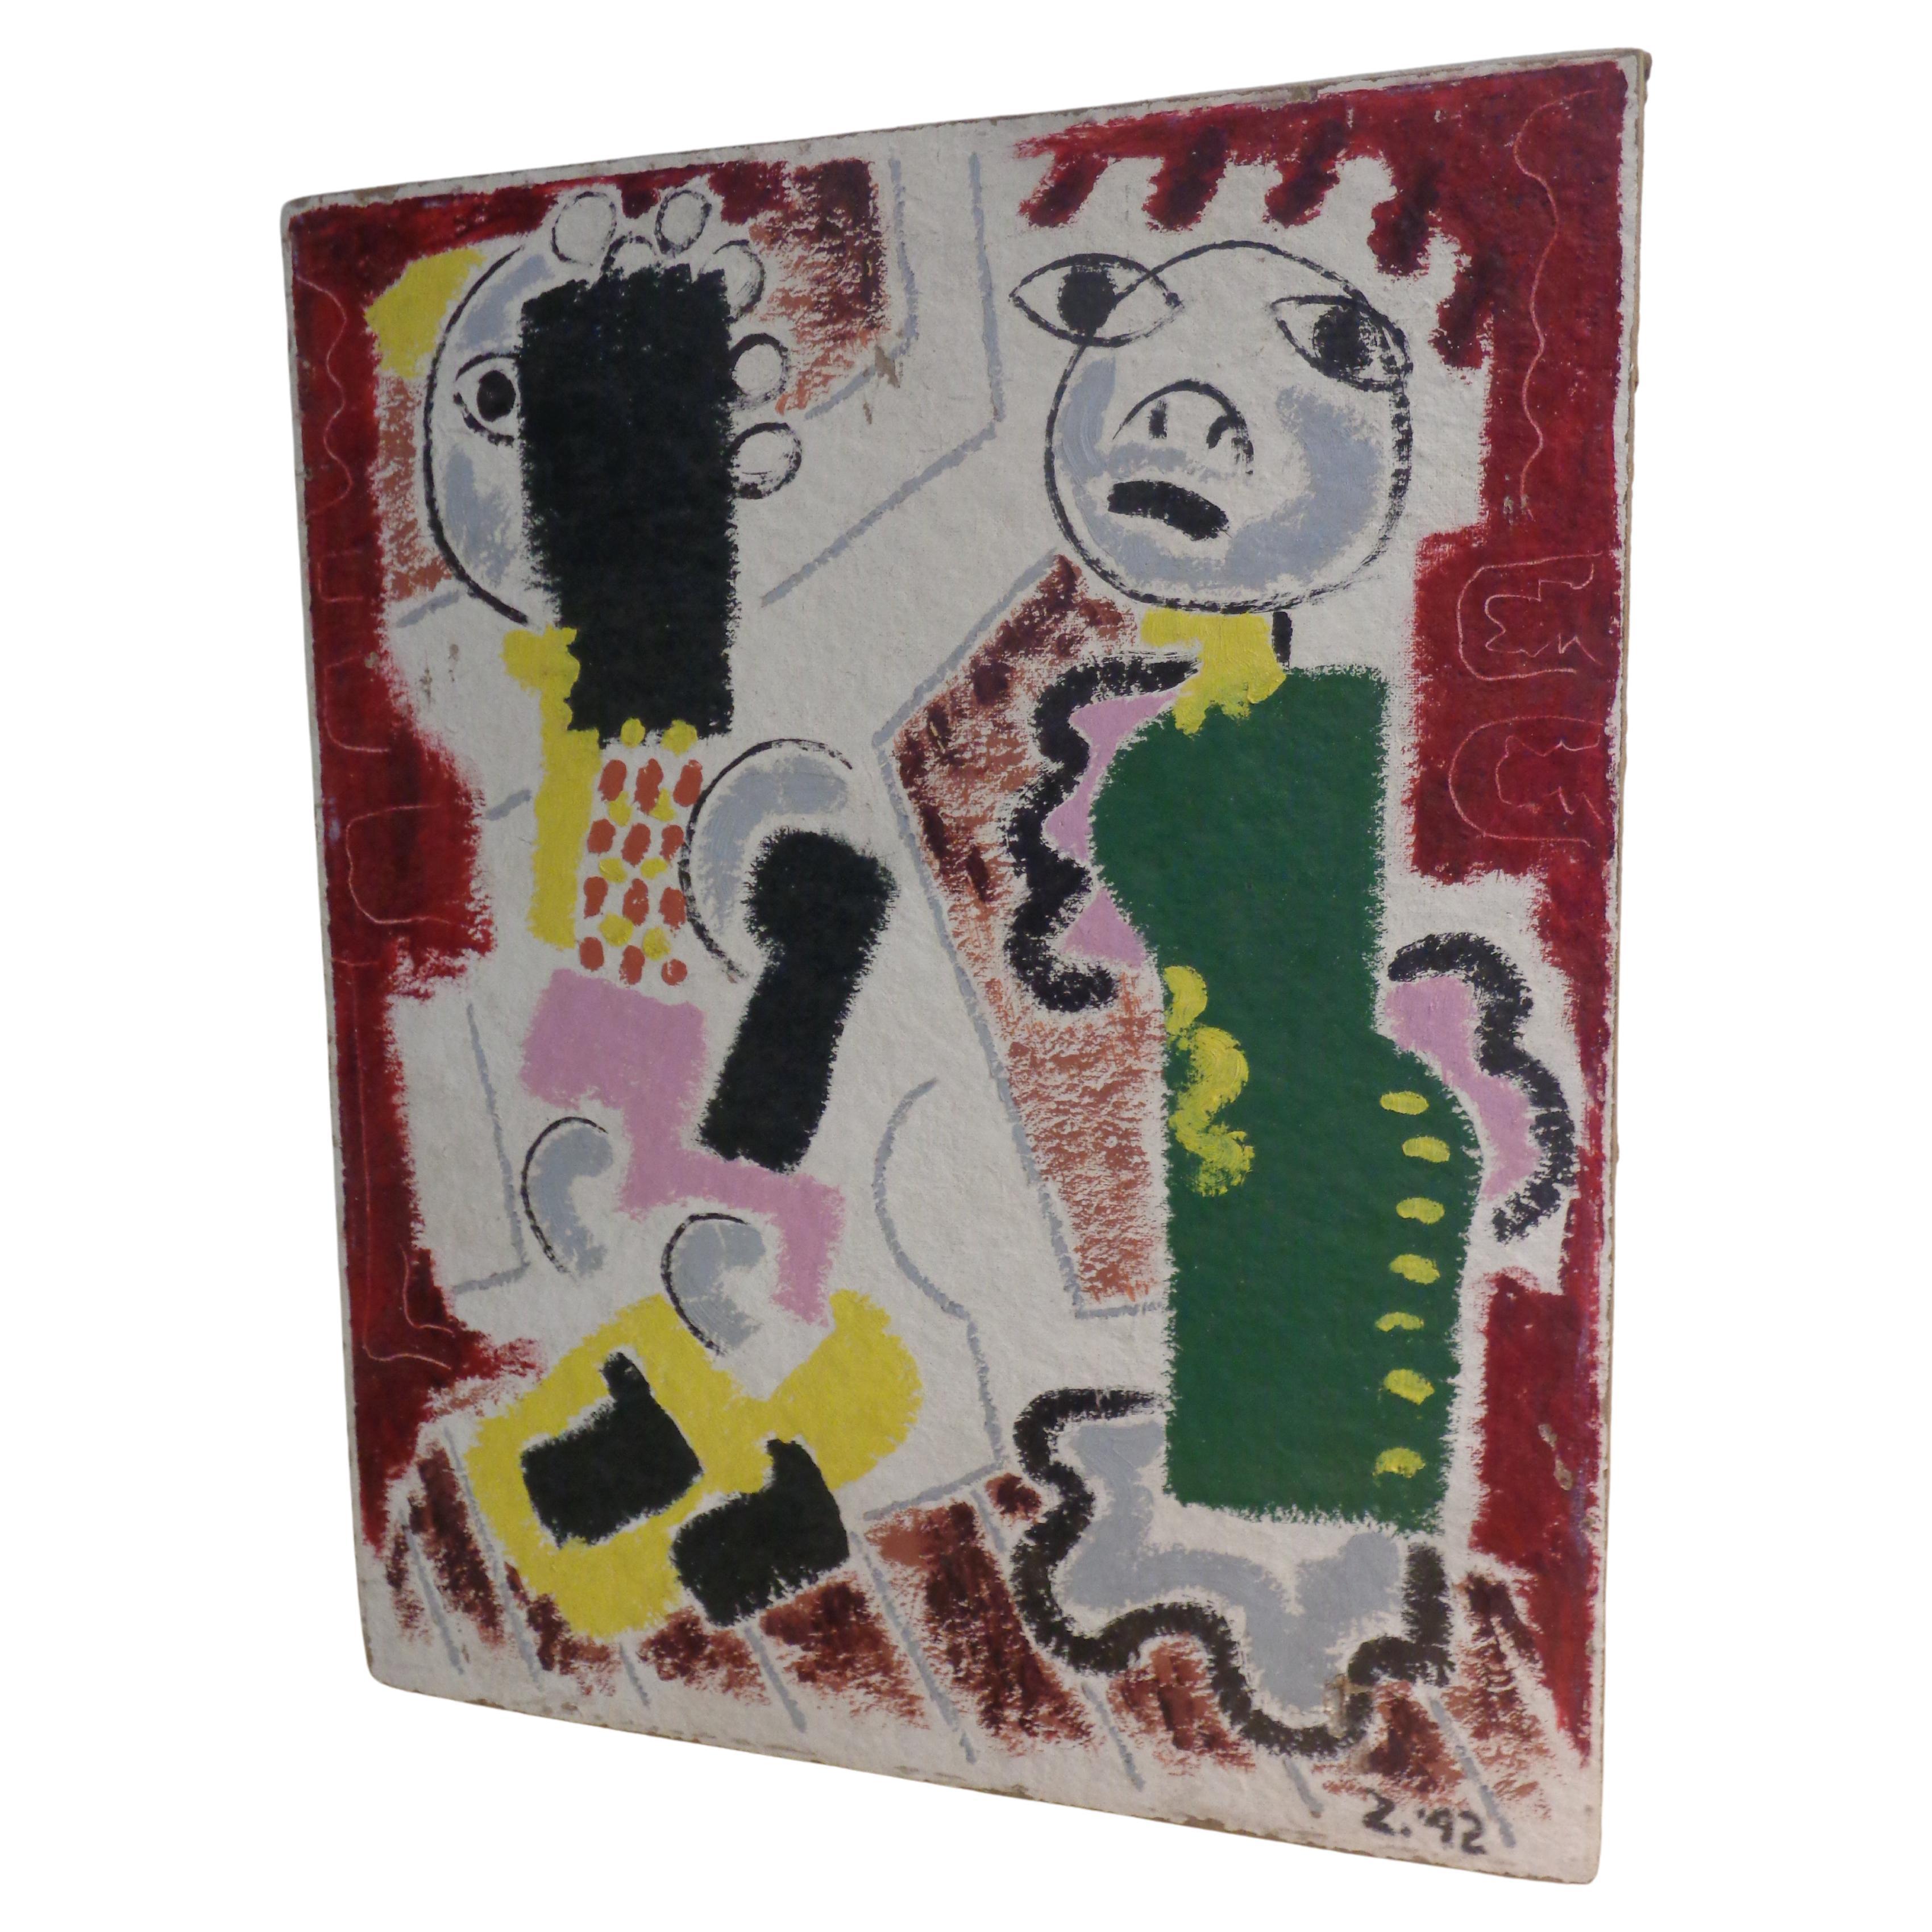 Primitivo dipinto astratto modernista ad olio su tavola di homosote di Zoute (nato Leon Salter 1903 - 1976 - North Rose NY) con due figure - firmato in basso a destra Z. '42. Questo quadro ricorda i dipinti del gruppo Cobra di Jean Dubuffet / Karel